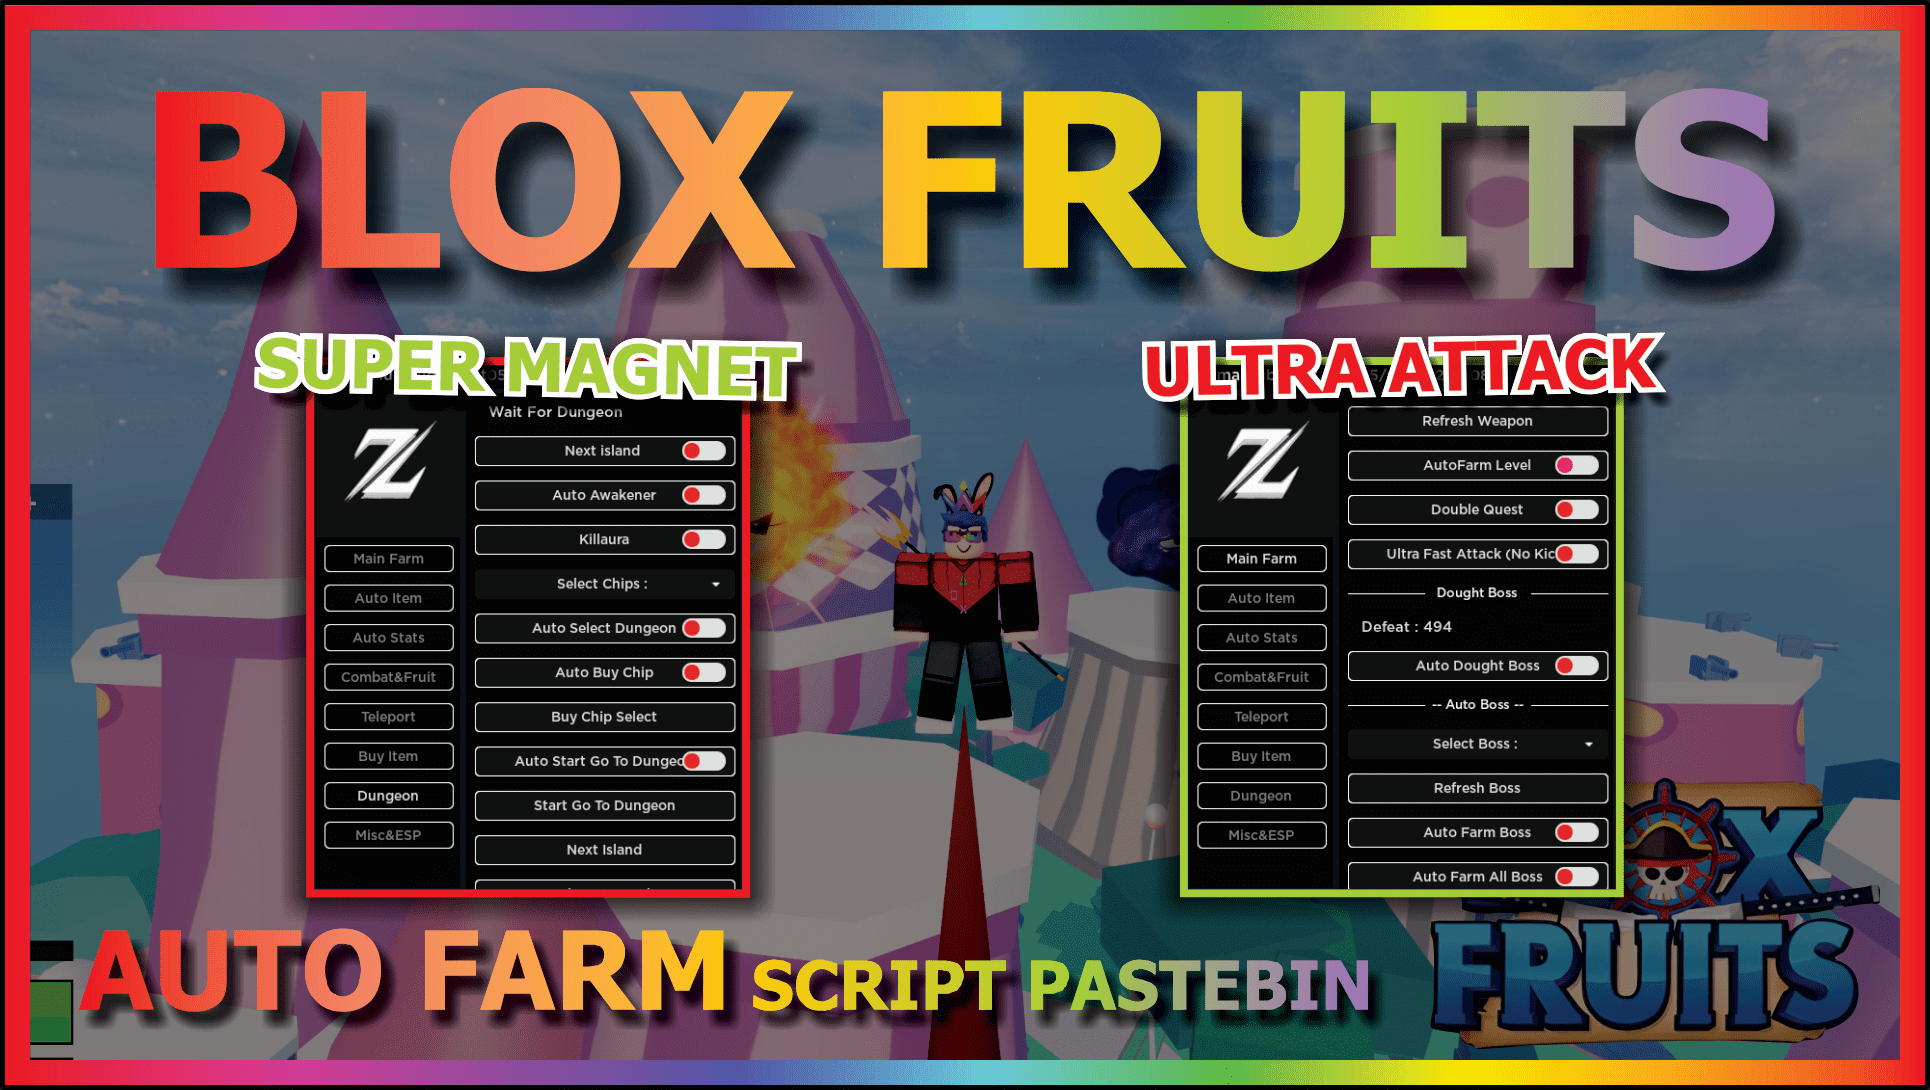 MrMaxNaJa Blox Fruits Script Download 100% Free